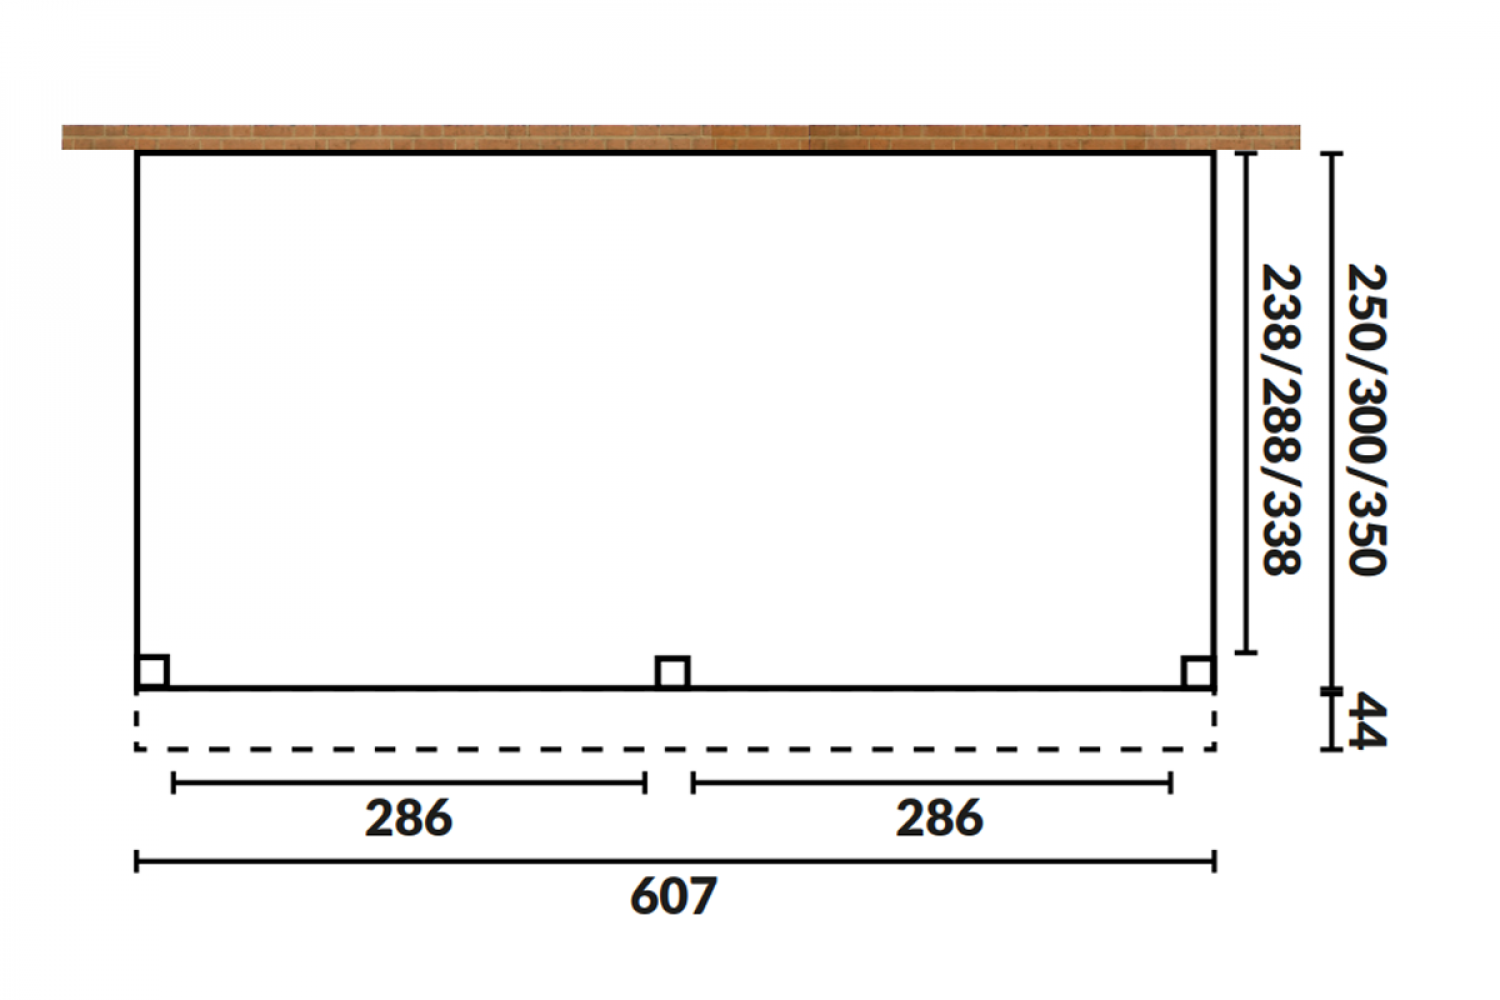 Aanbouw veranda Oblique schuin dak - 600 x 400 cm - Polycarbonaat